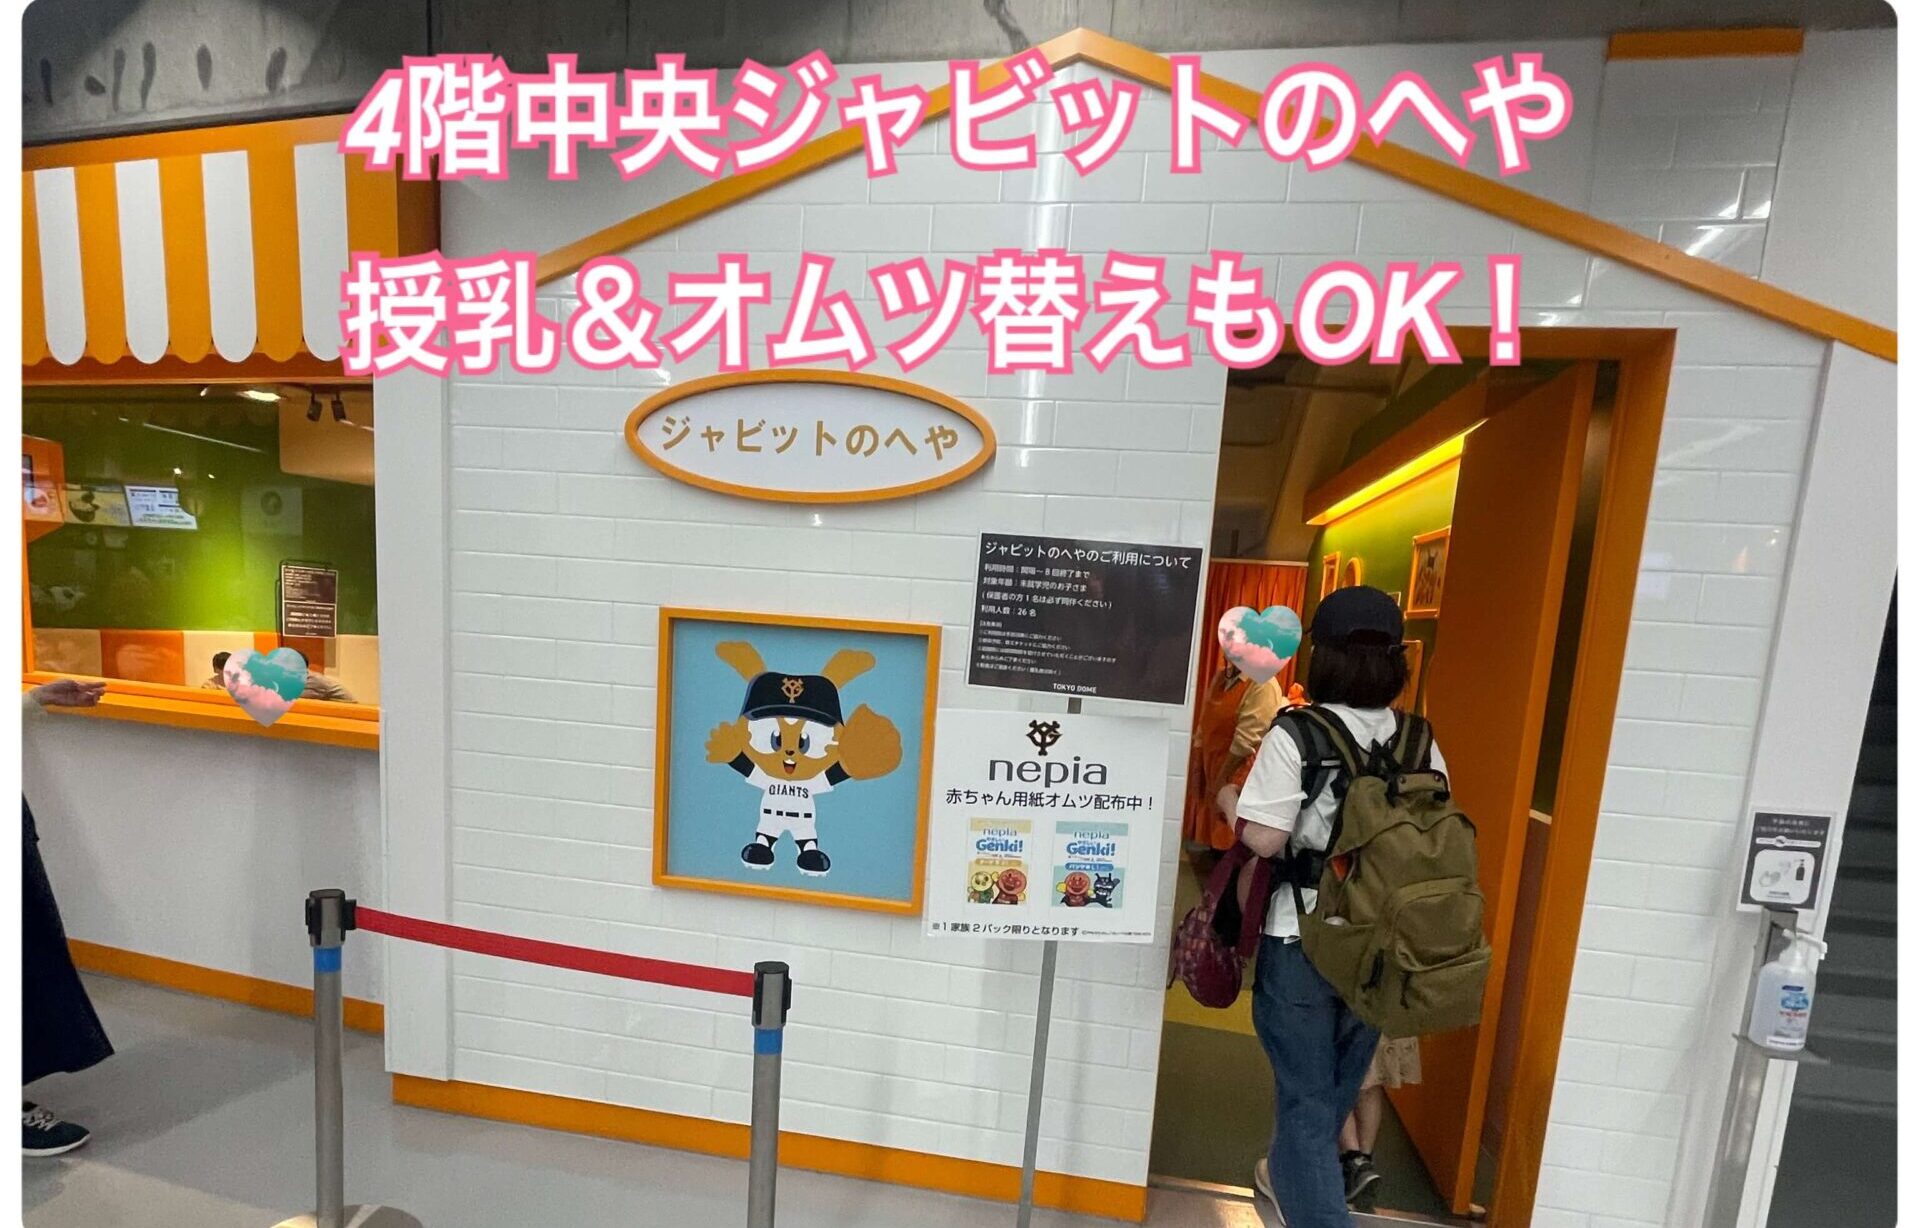 東京ドーム巨人戦子連れ観戦ベビールームや授乳おむつ替えスペースのある4階ジャビットのへやがおすすめ1階にもベビールームあり